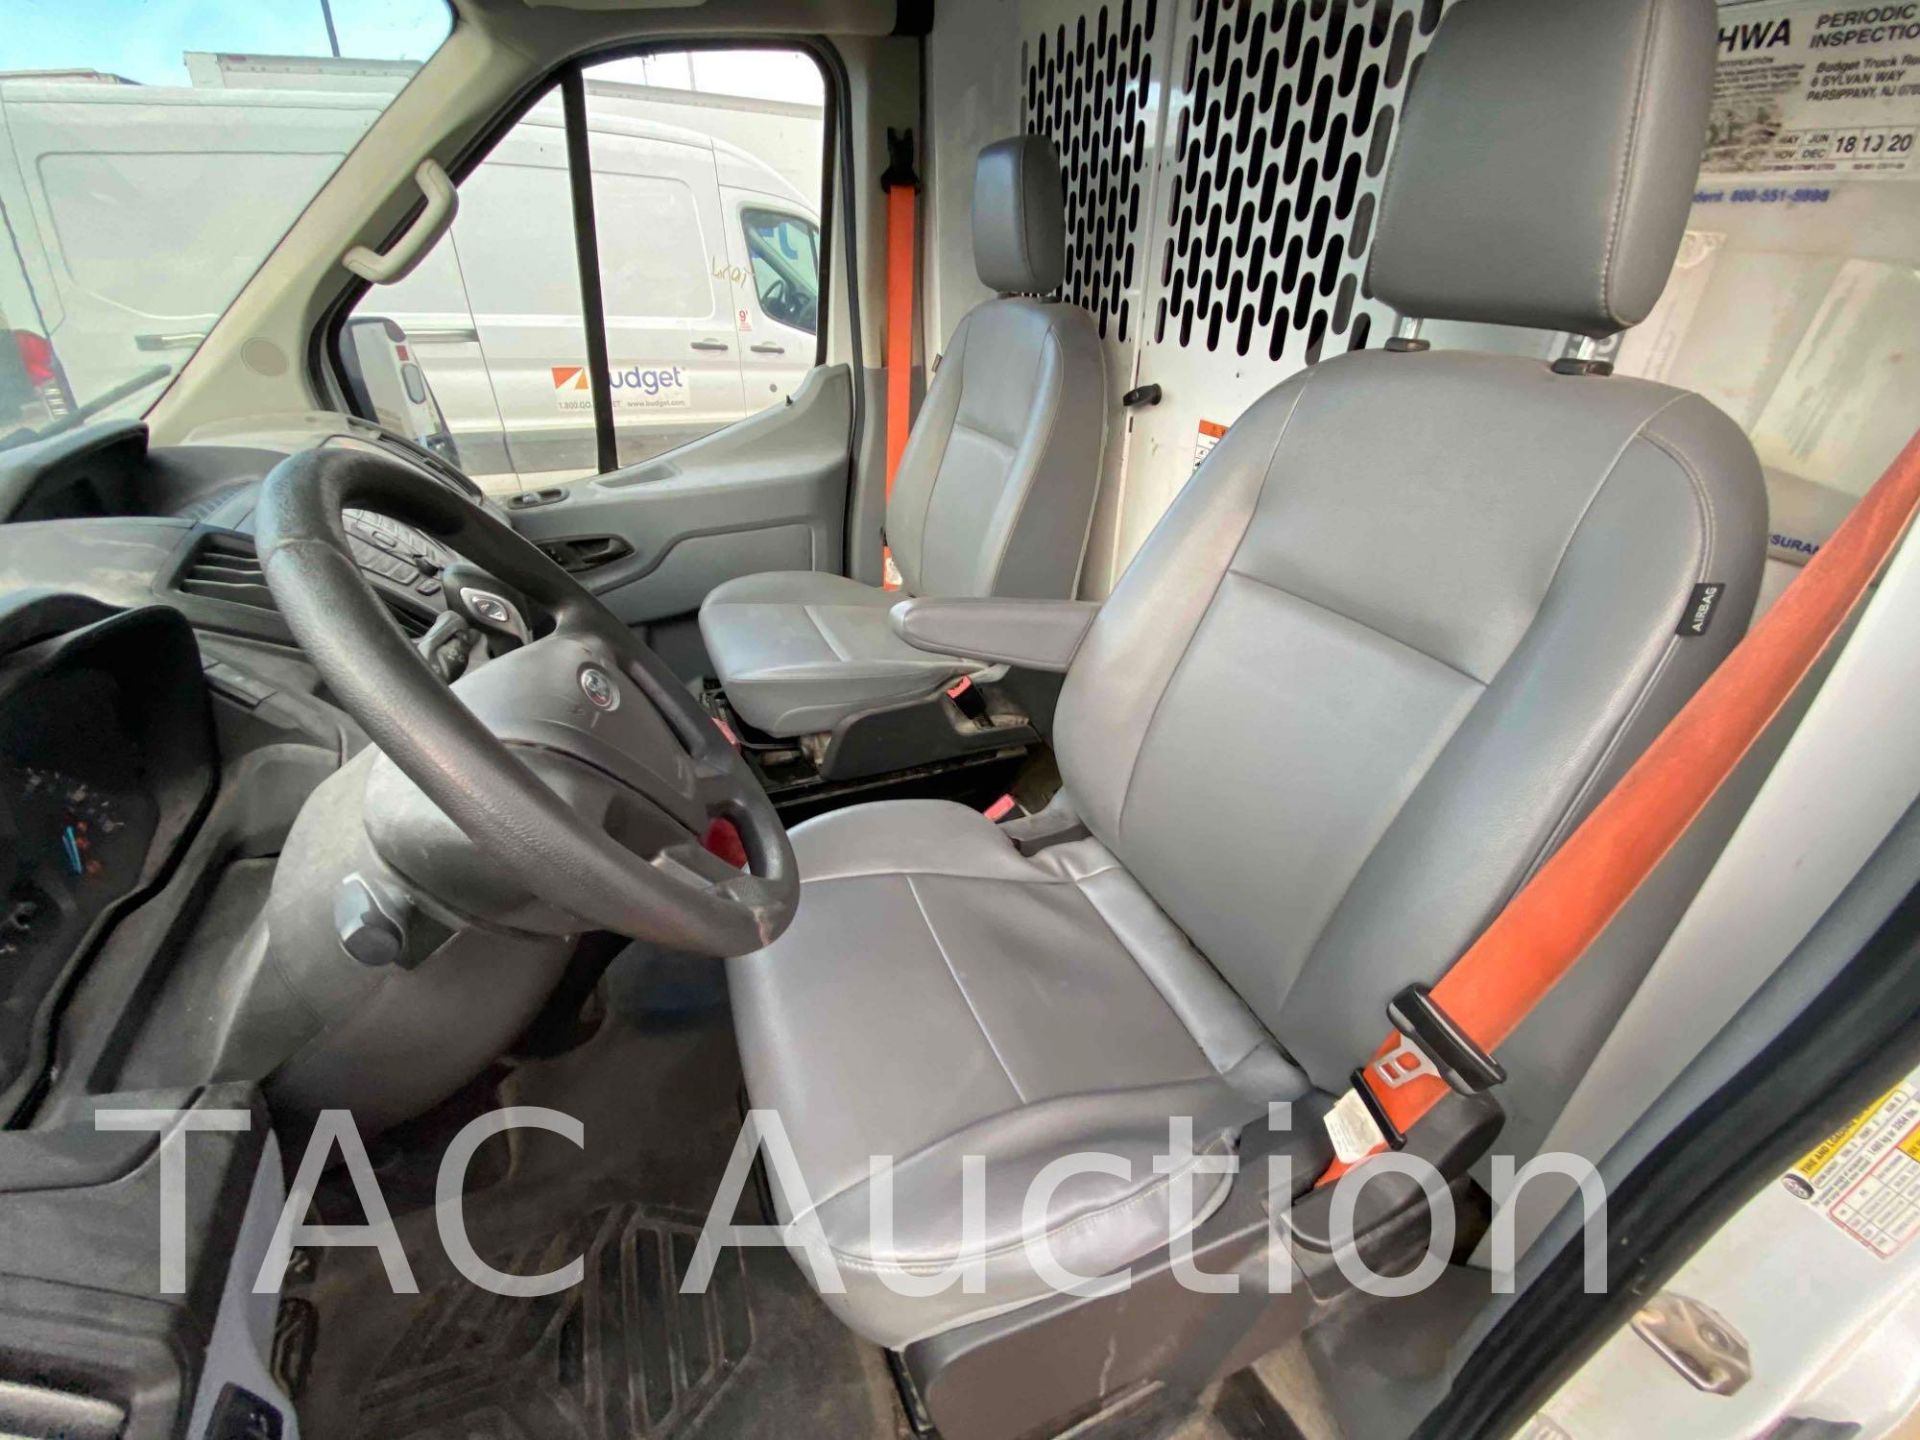 2019 Ford Transit 150 Cargo Van - Image 12 of 44